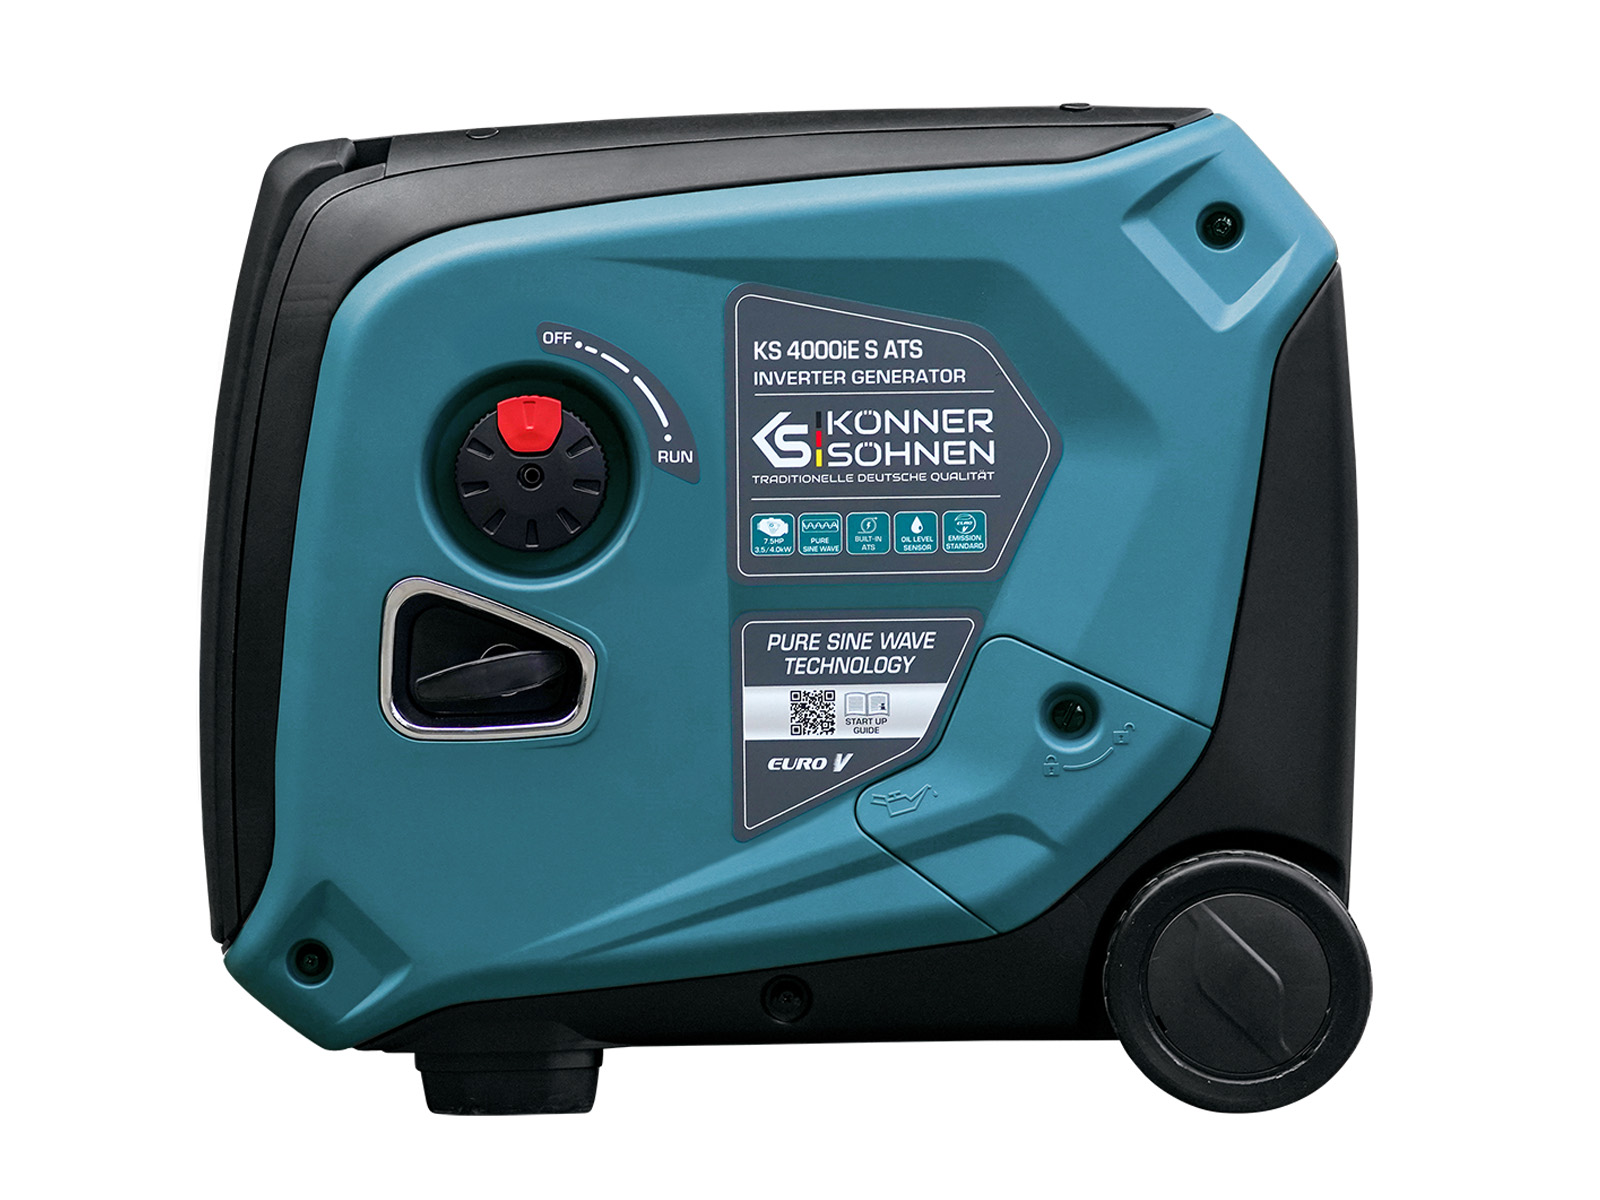 Inverter generator KS 4000iE S ATS Version 2